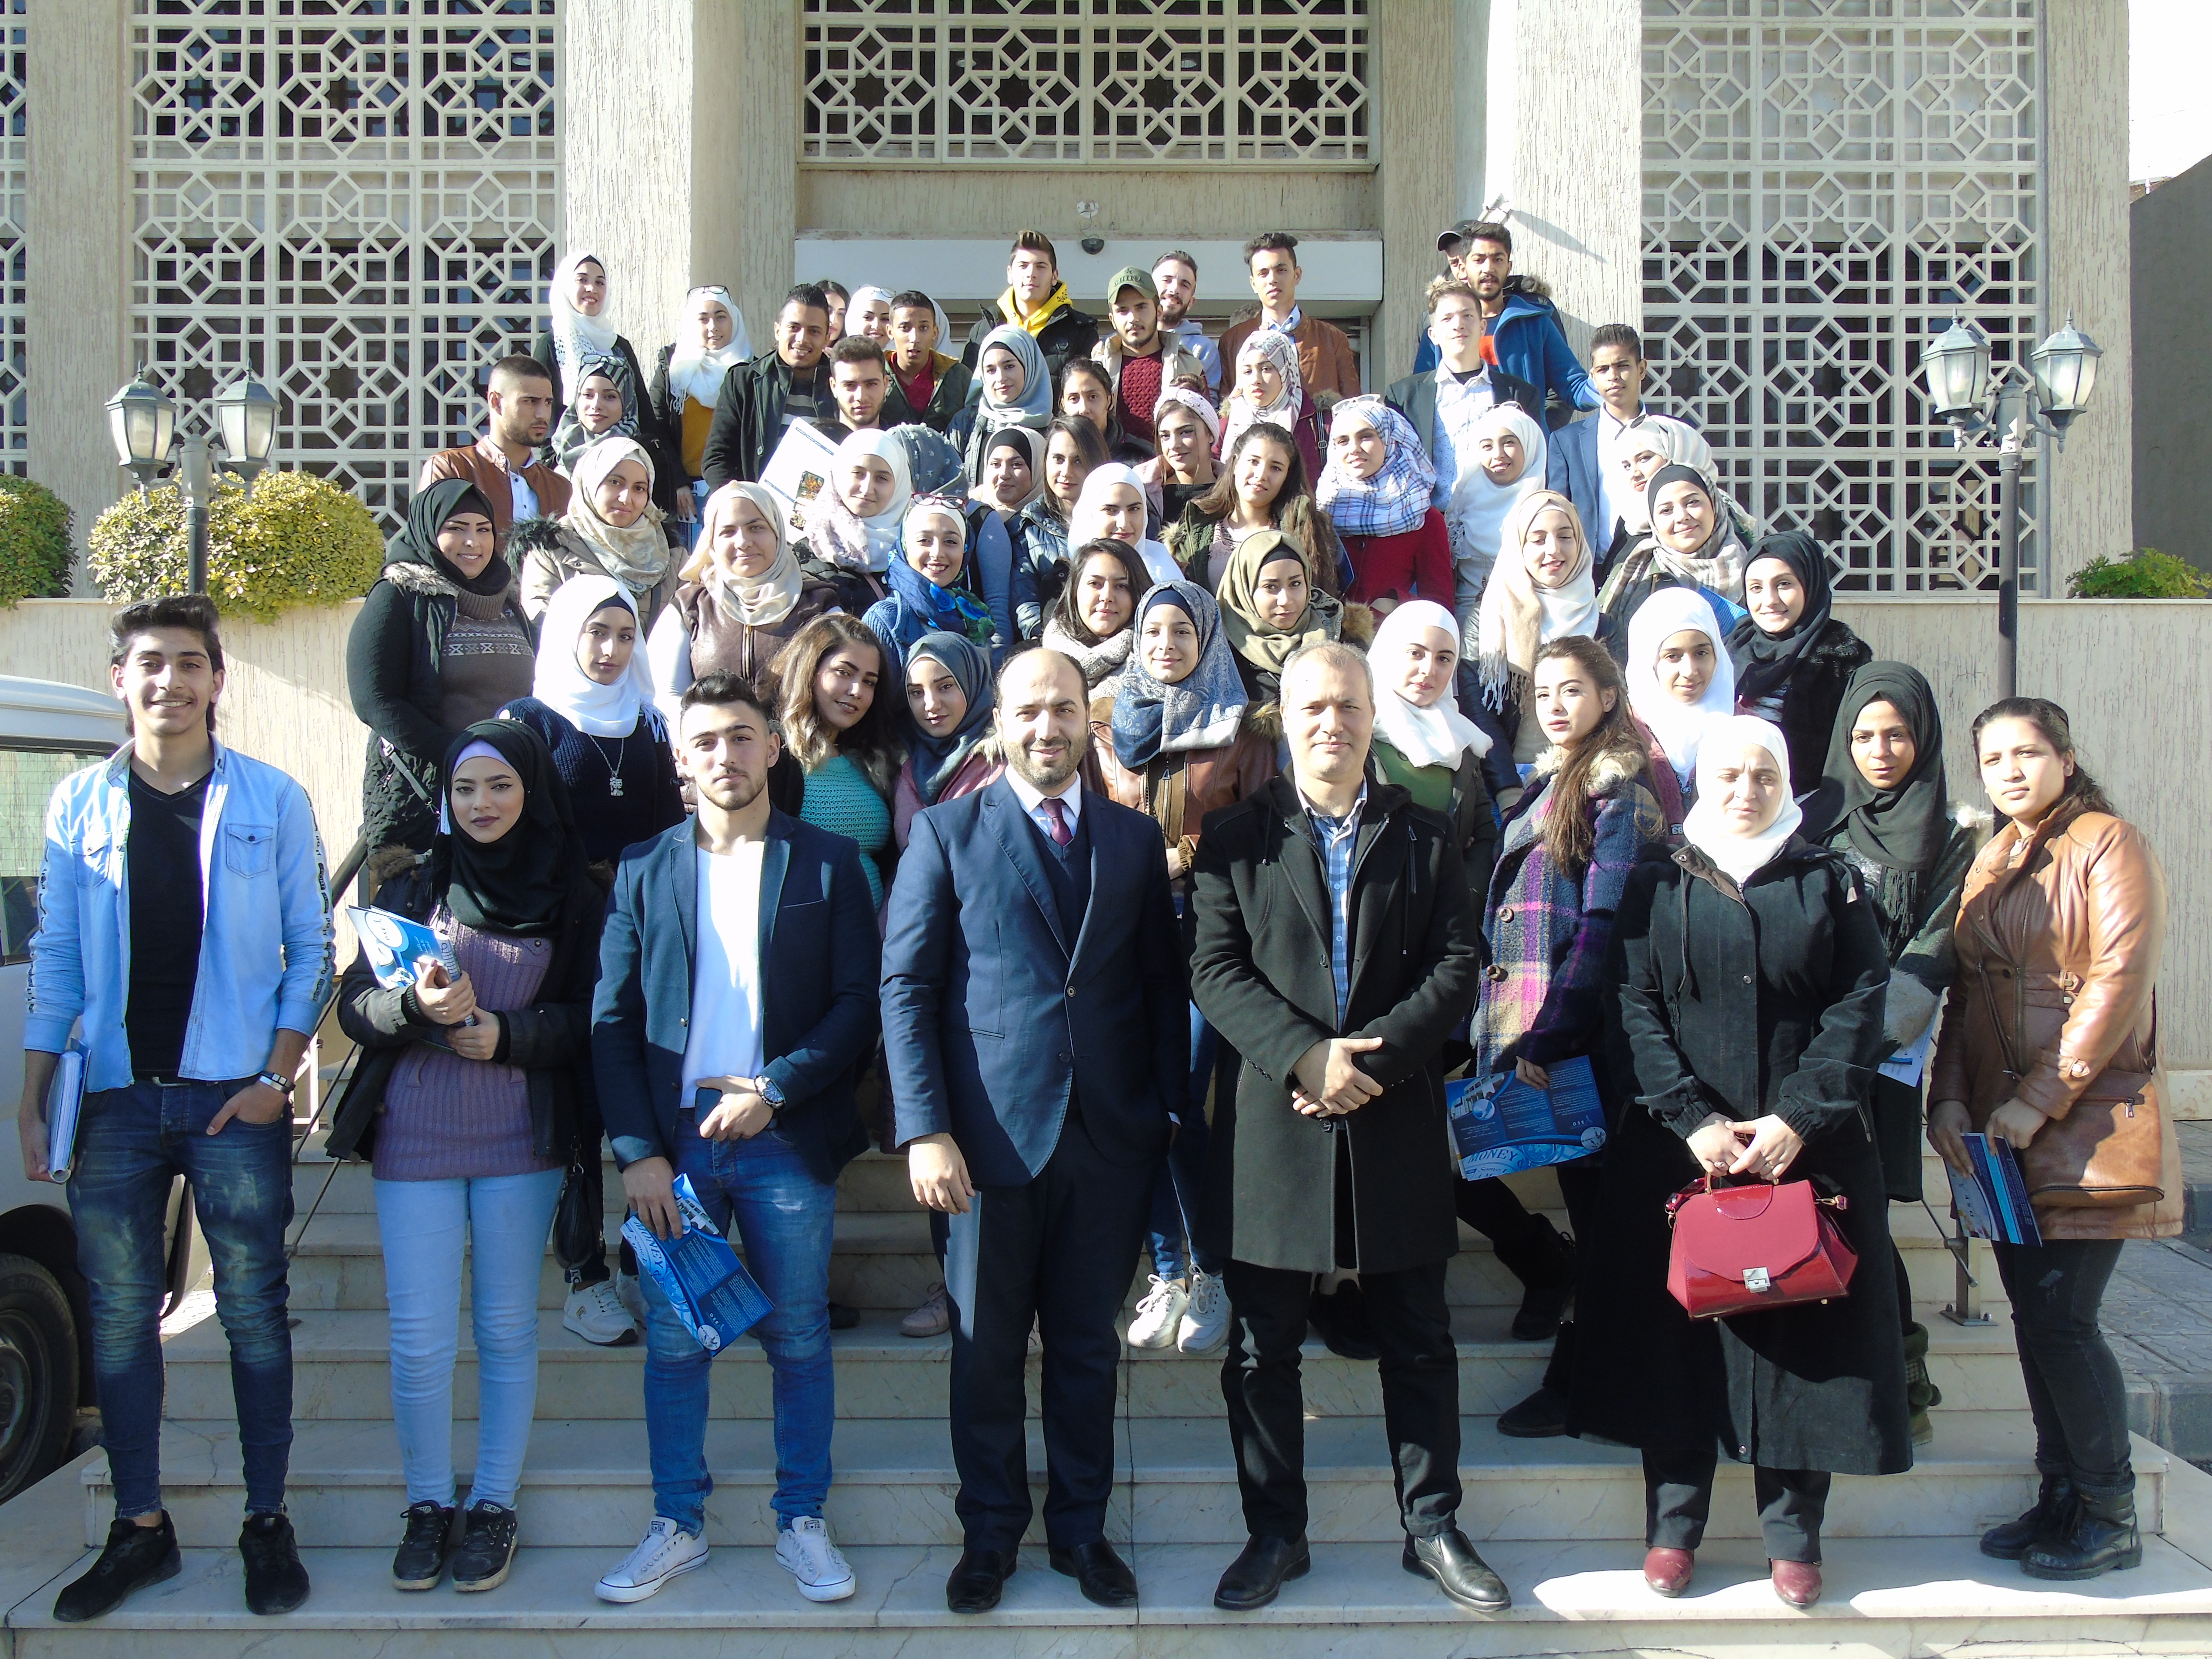 زيارة ميدانية من طلاب معهد دمشق المتوسط (DTC) إلى مقر السوق